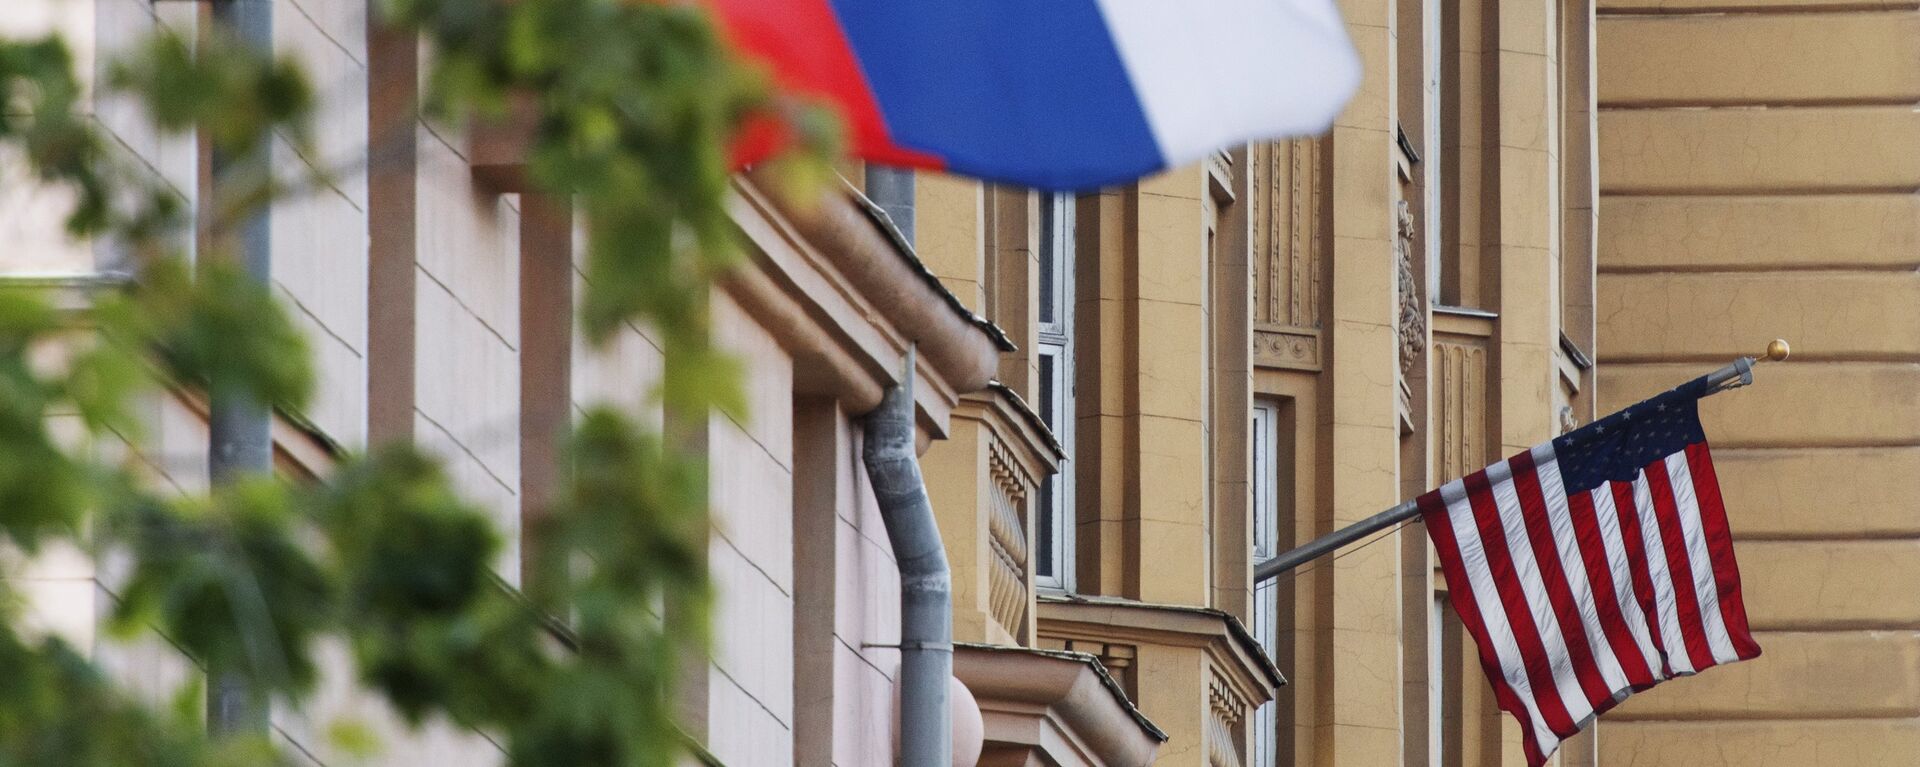 Banderas de EEUU y de Rusia en las proximidades de la Embajada de EEUU en Moscú. - Sputnik Mundo, 1920, 06.11.2021